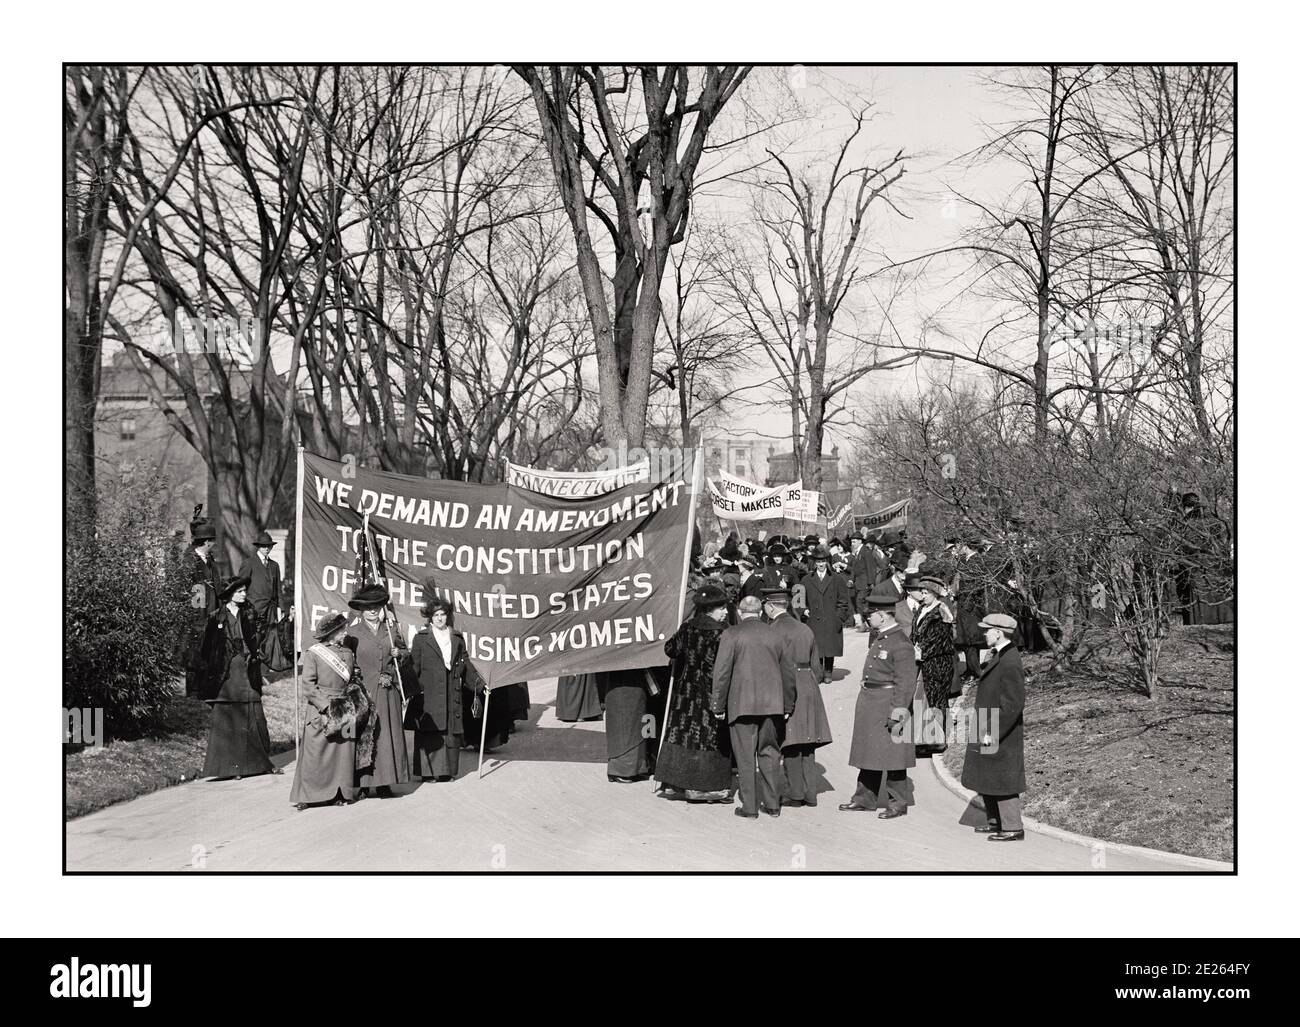 1914 el movimiento Suffragette, sufragio femenino, bajo la bandera "votos por las mujeres", que comenzó a mediados del siglo XIX, culminó en la victoria con la ratificación de la 19ª Enmienda a la Constitución el 19 de agosto de 1920. SUFRAGIO CONNECTICUT EE.UU. 1914 Foto de stock